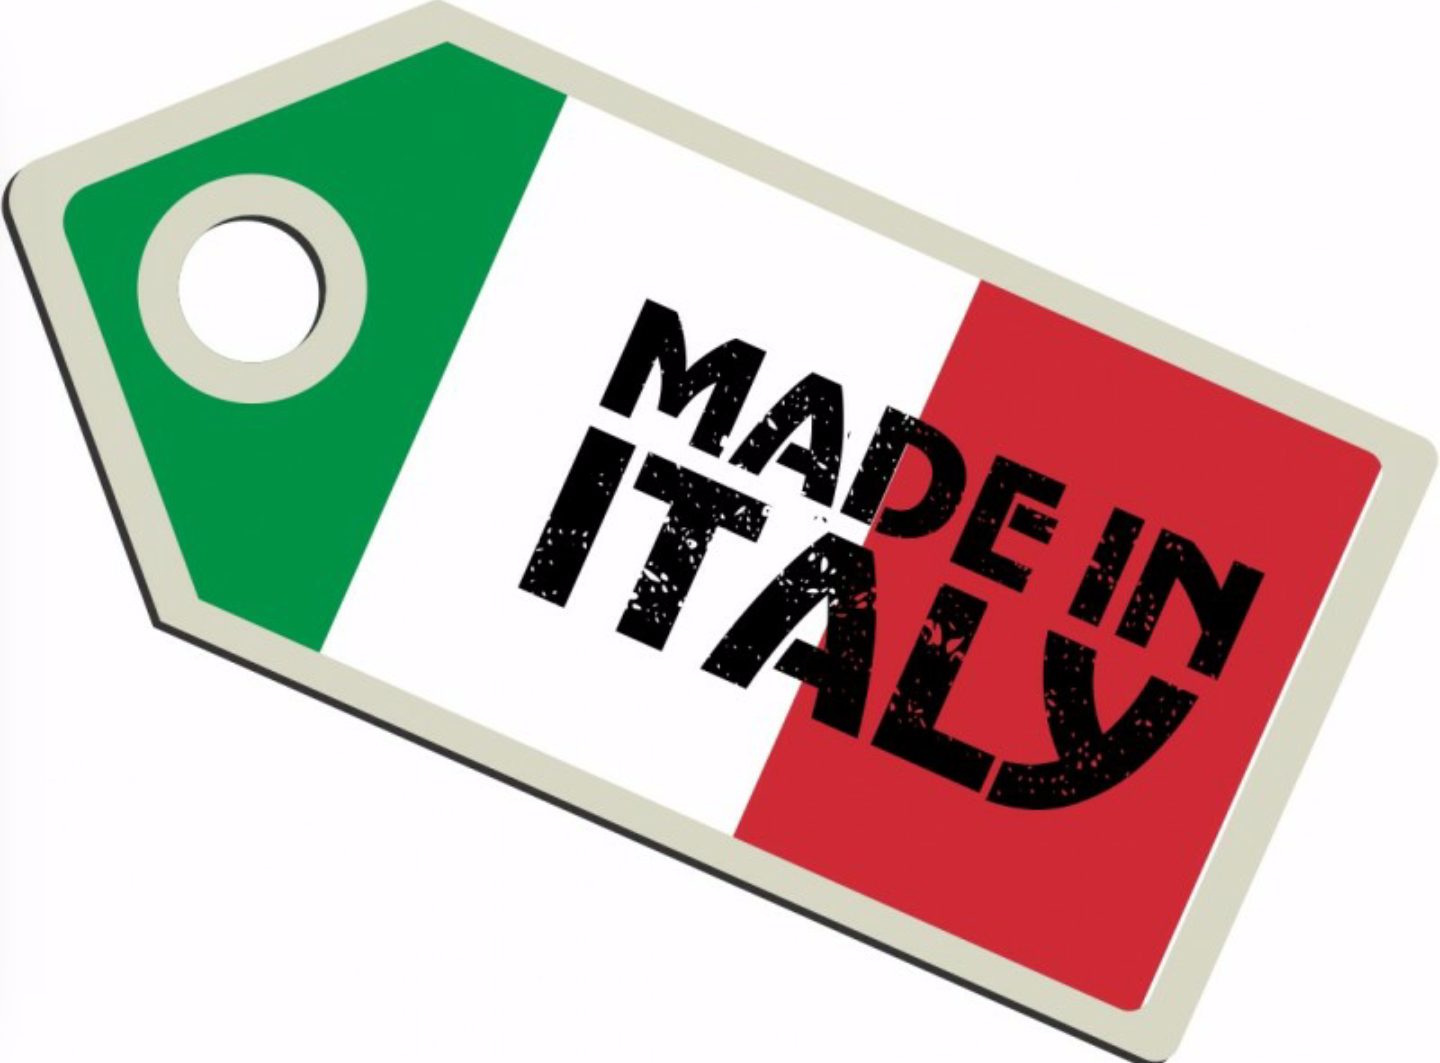 Marchio Made in Italy, solo il 35% delle imprese medio-grandi lo utilizza  all'estero 